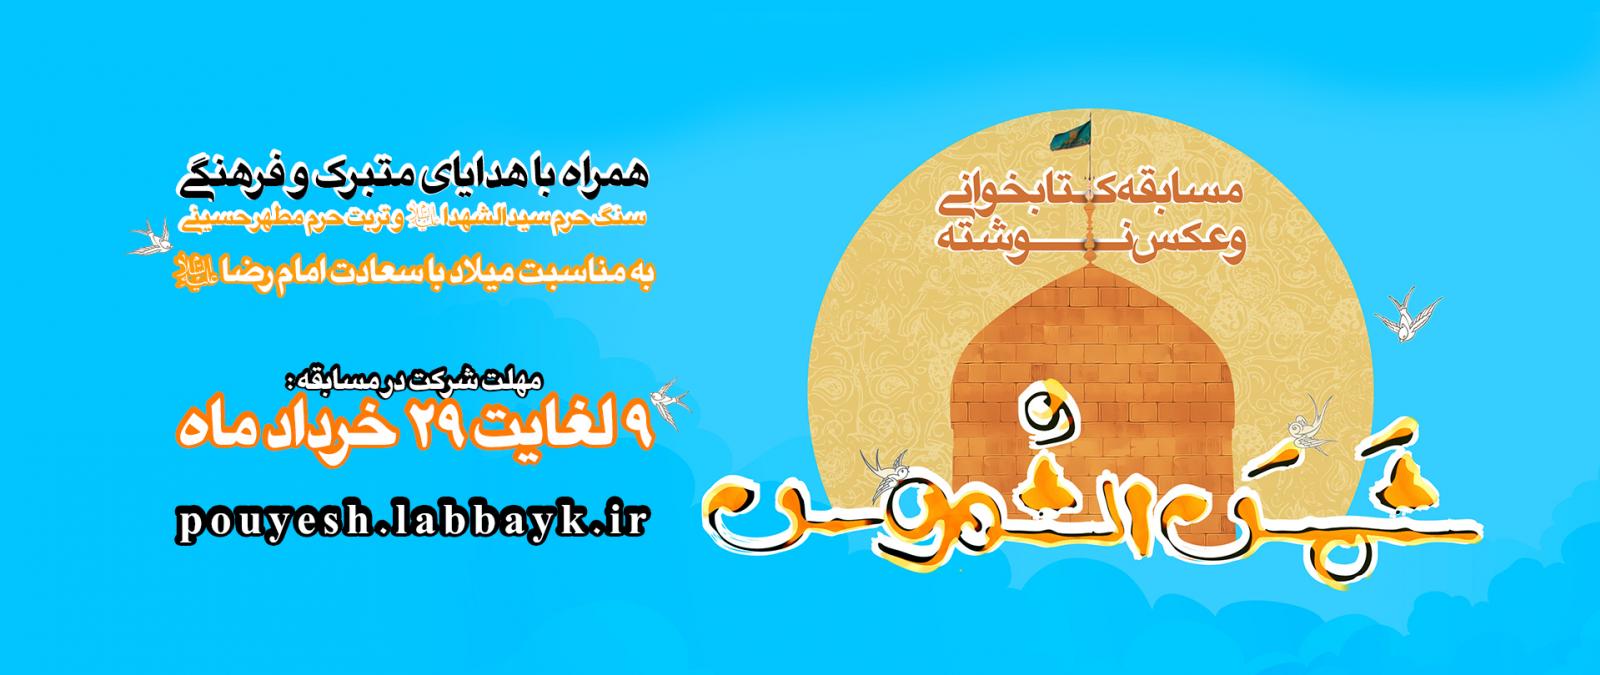 مسابقه کتابخوانی شمس الشموس به مناسبت میلاد با سعادت امام رضا(ع) در سایت لبیک برگزار می شود